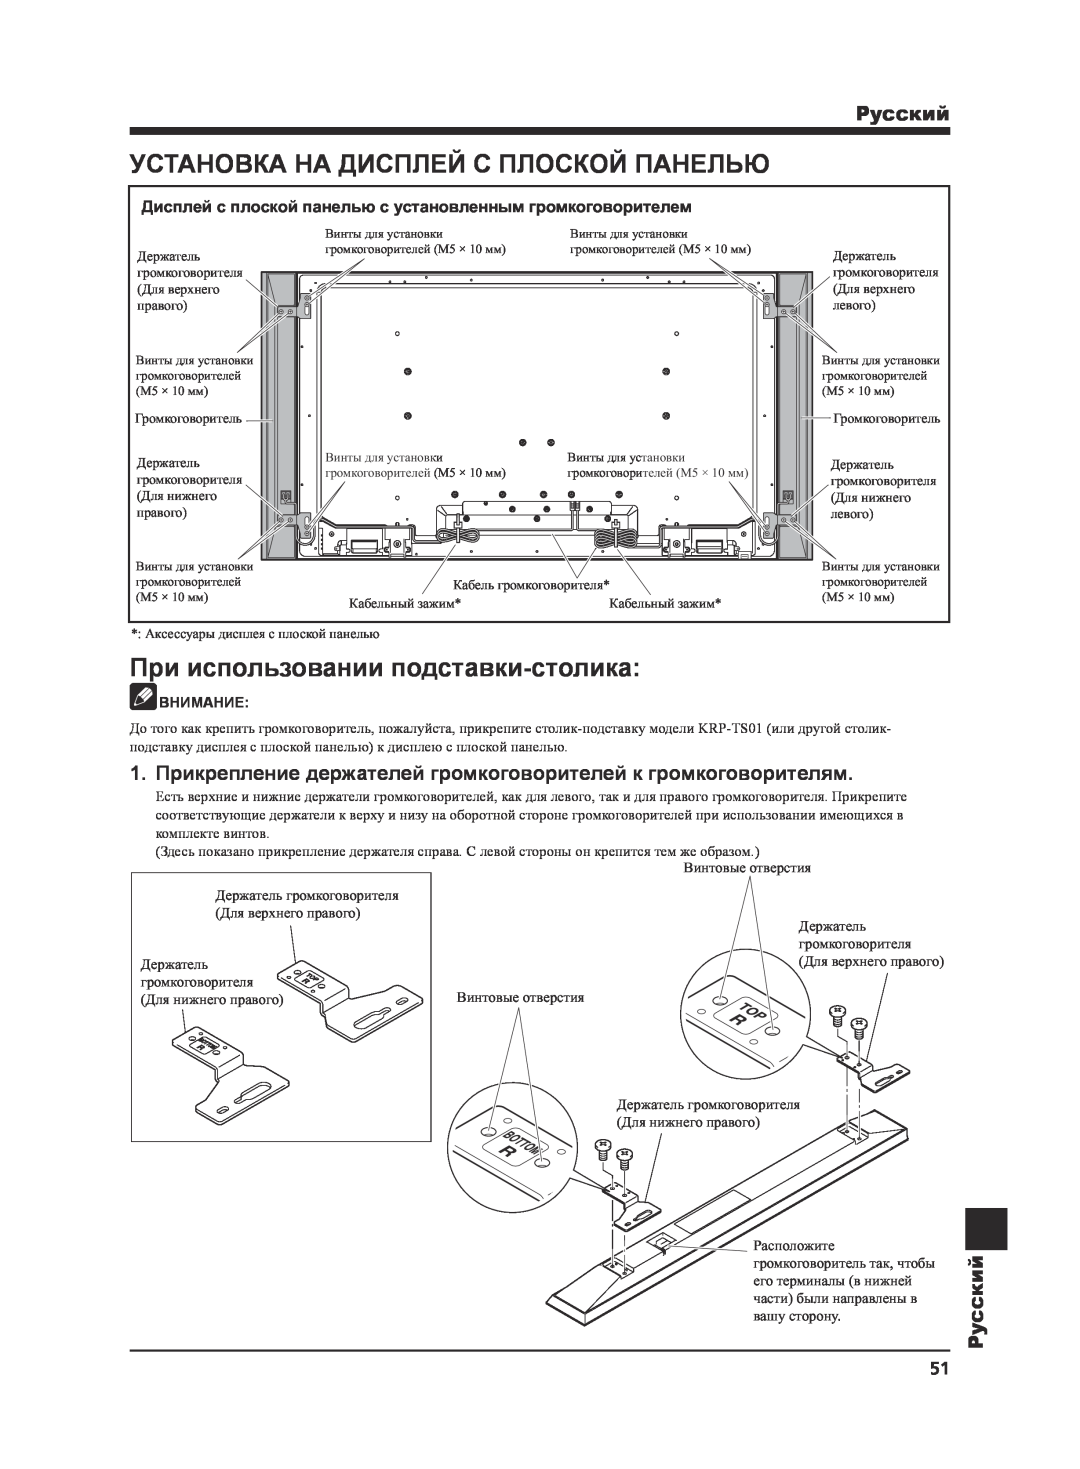 Pioneer KRP-S02 manual Установка На Дисплей С Плоской Панелью, При использовании подставки-столика, Pyccкий, Внимание 